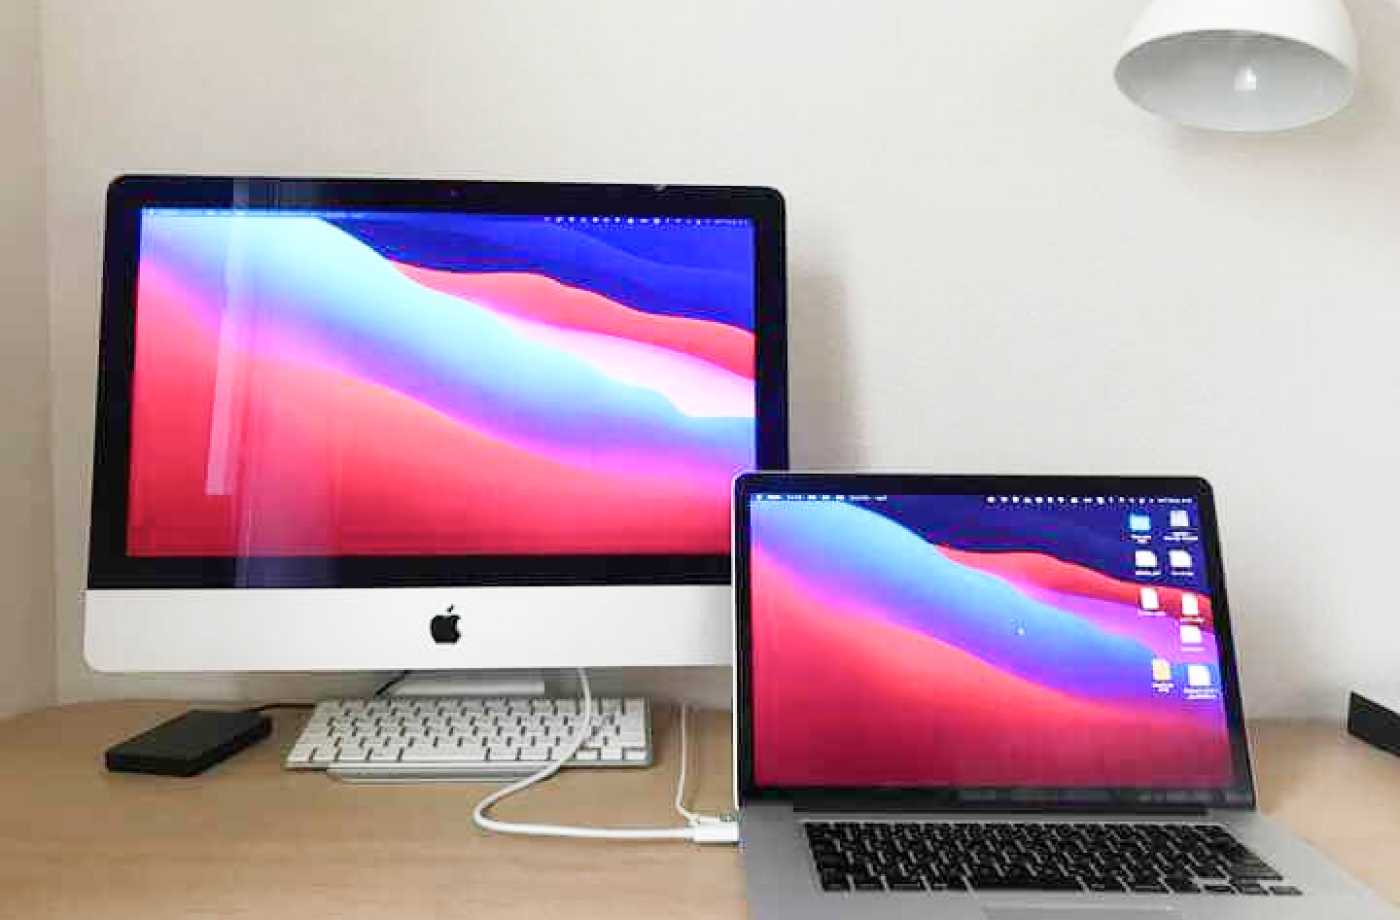 iMacデスクトップPCとMacBookProを繋いでデュアルモニターを実現する